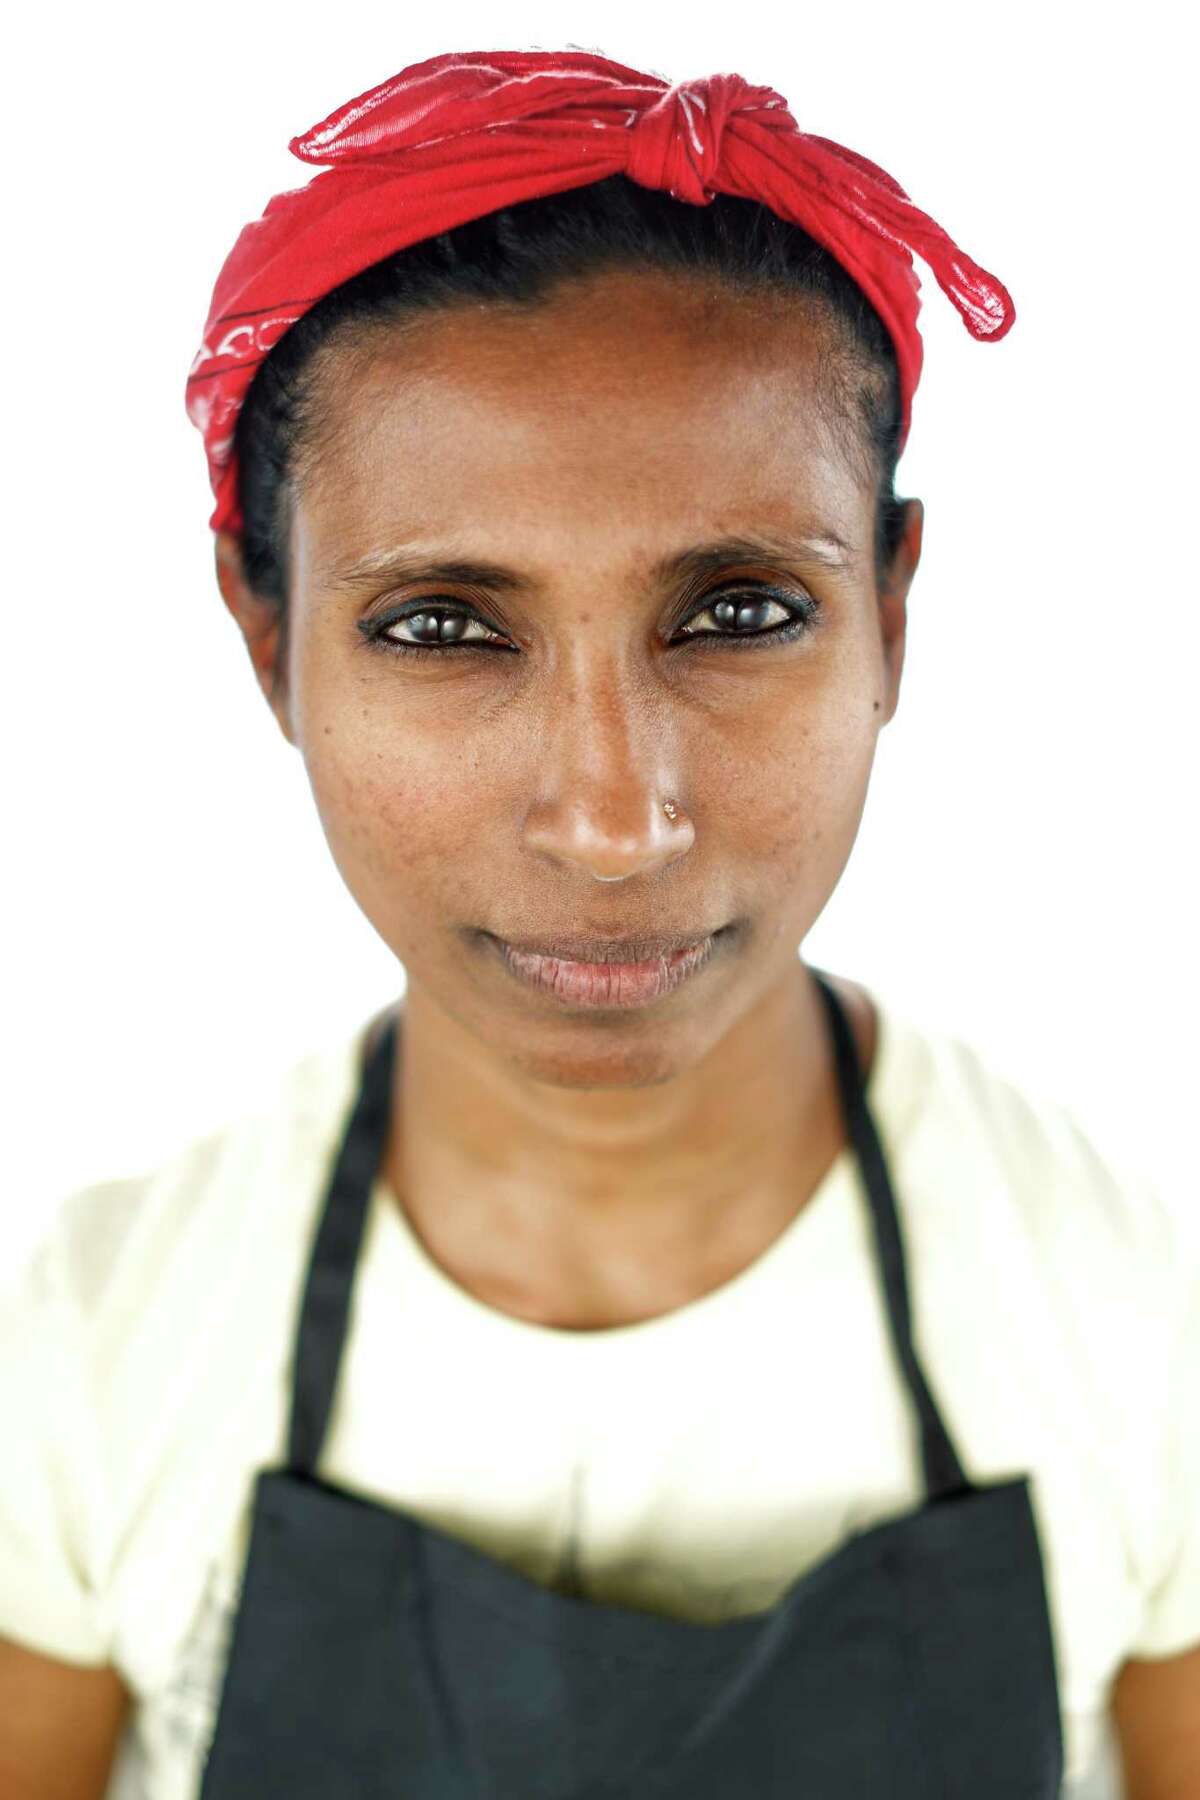 阿扎琳娜·欧索普(Azalina Eusope)是一位将马来西亚美食带到旧金山的厨师